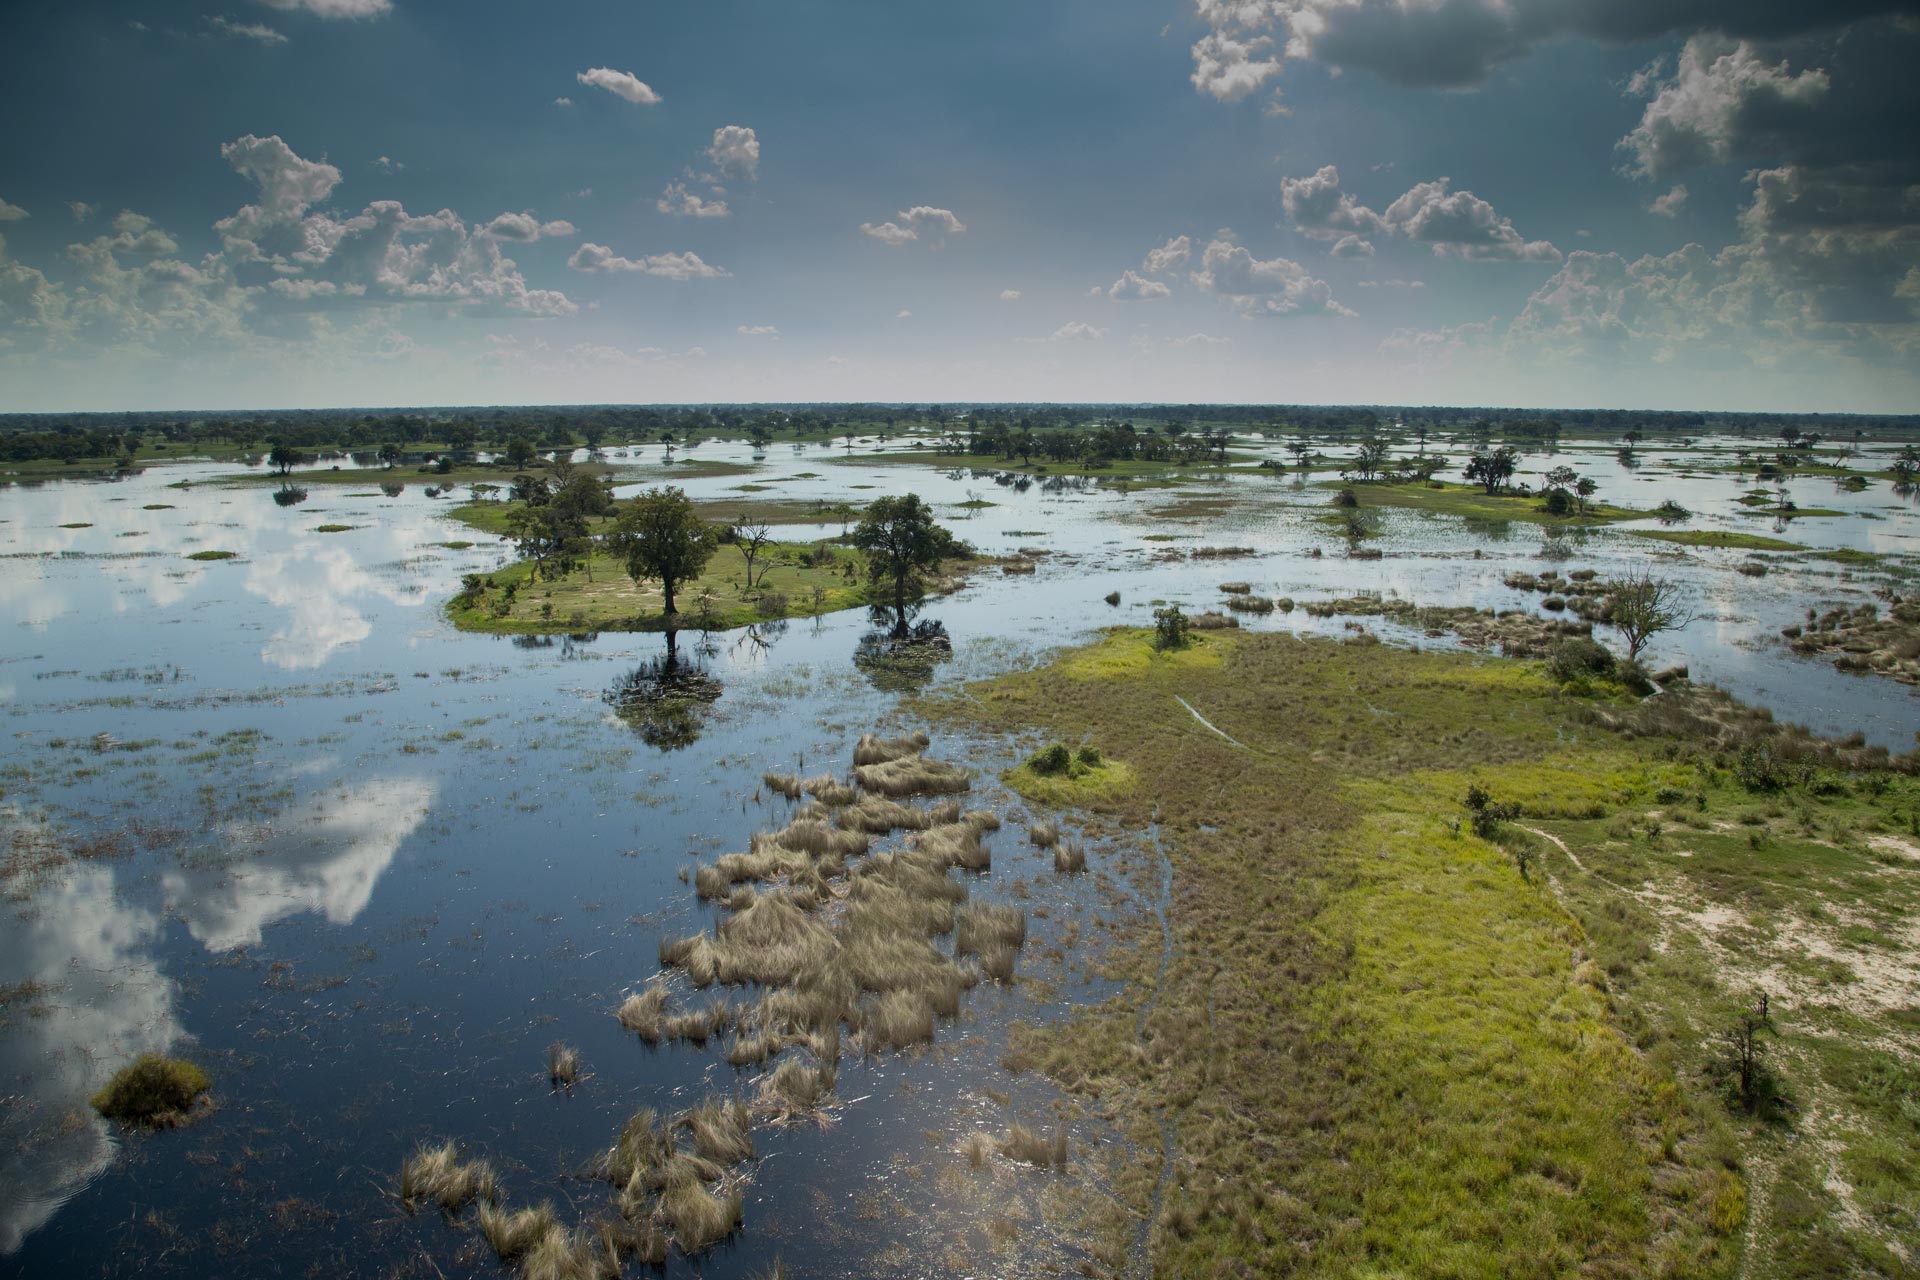 okavango delta safari